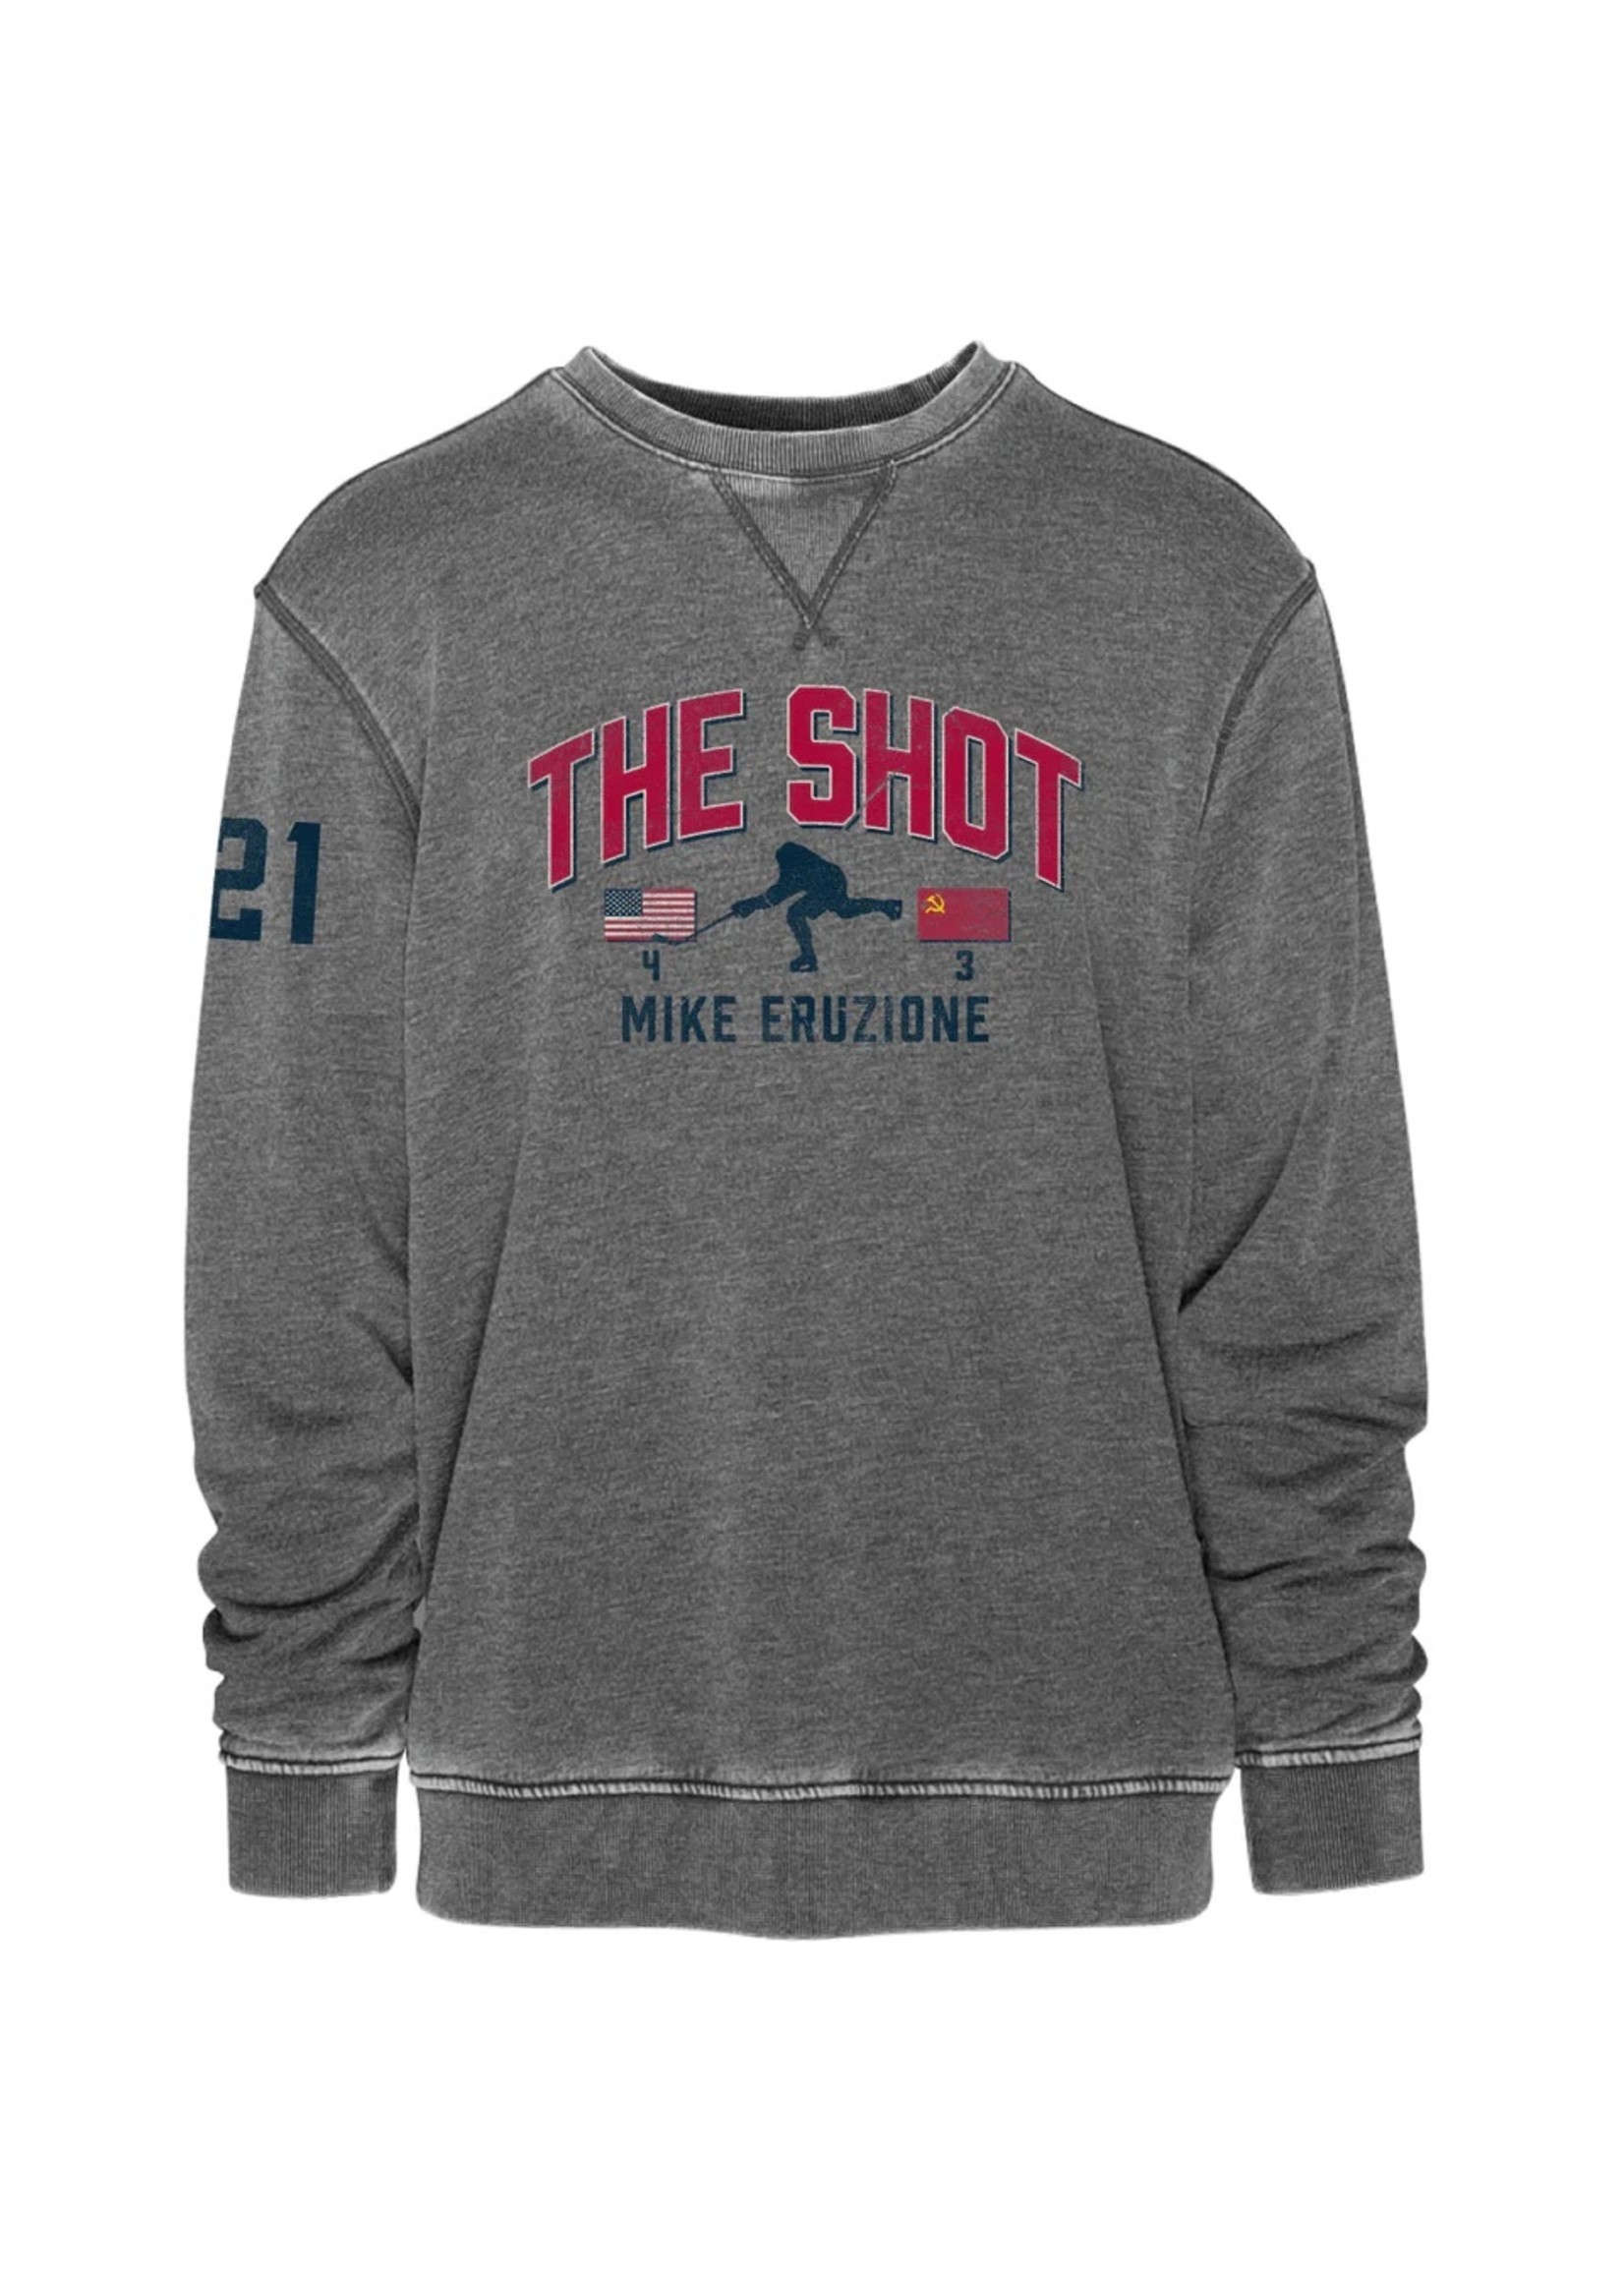 Eruzione 'The Shot' & Score Crew Sweatshirt